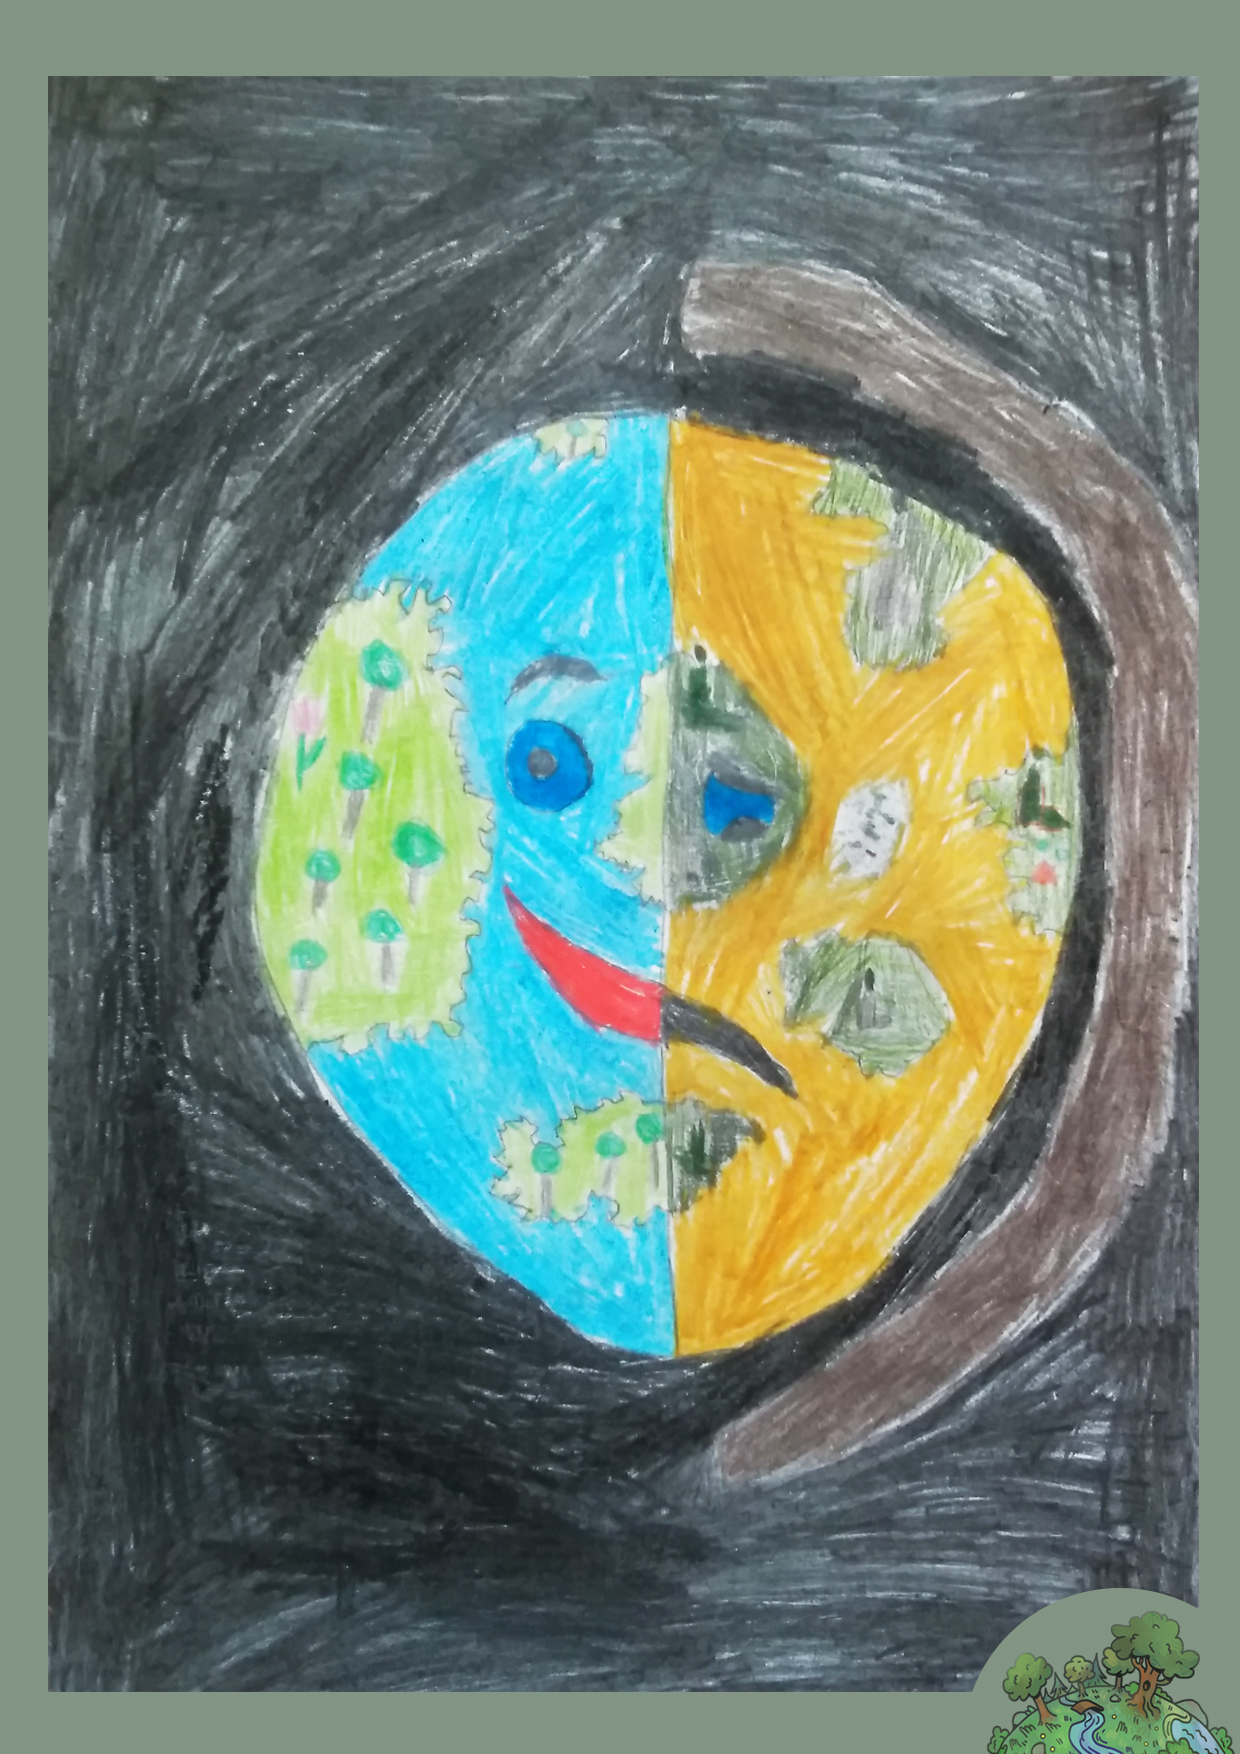 Tóth Dániel, 10 éves<br />A kép címe: Földünk állapota gyerekszemmel<br />Alkalmazott technika: színes ceruza